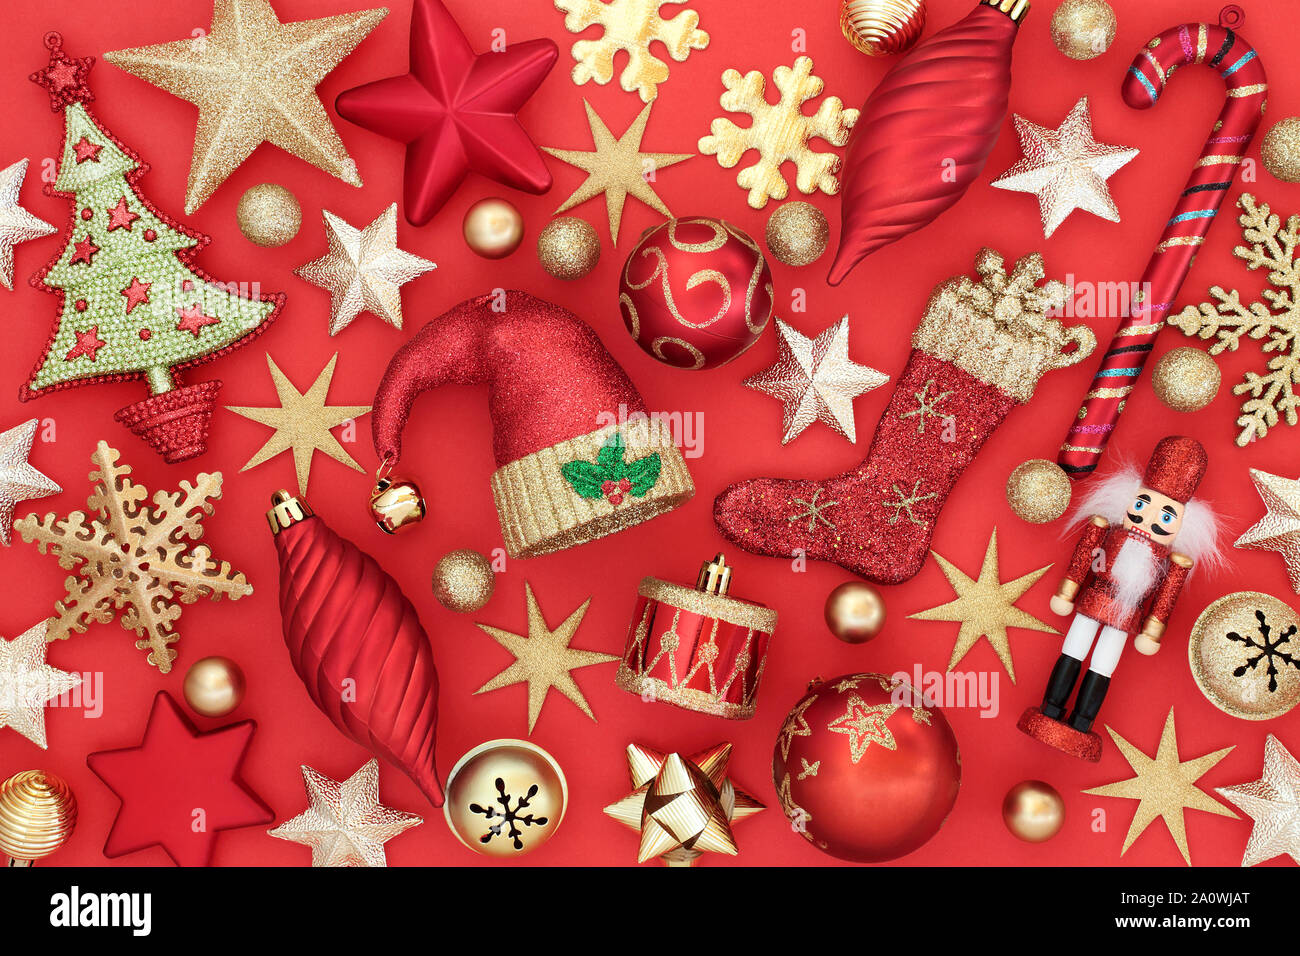 Arbre de Noël décorations babiole et symboles sur fond rouge. Carte de vœux traditionnels pour les fêtes. Banque D'Images